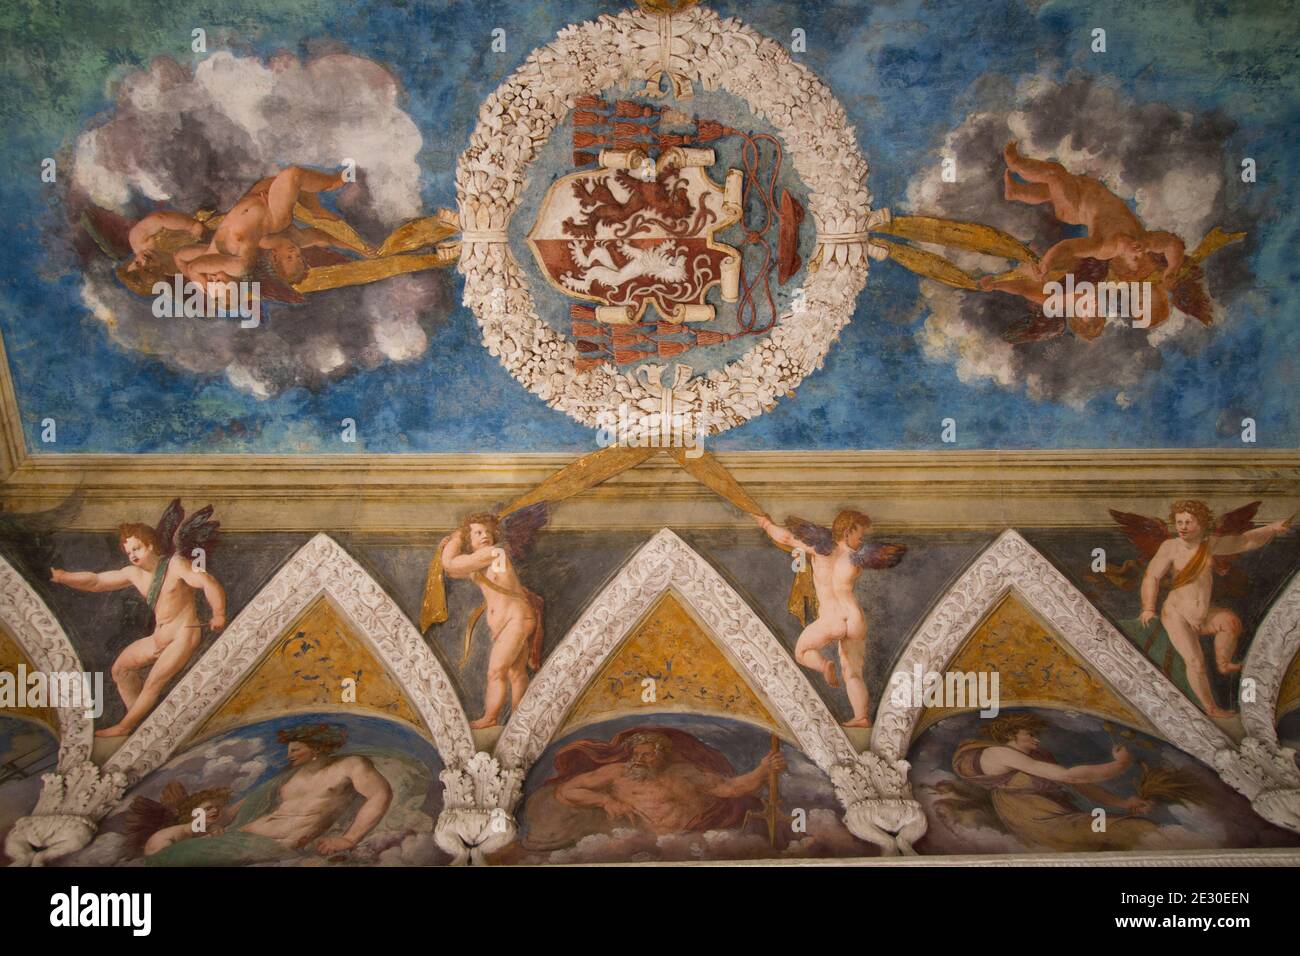 Blick auf die Gemälde im Schloss Buonconsiglio in Trient. Trient, Trient, Trentino-Südtirol, Italien, Europa. Stockfoto